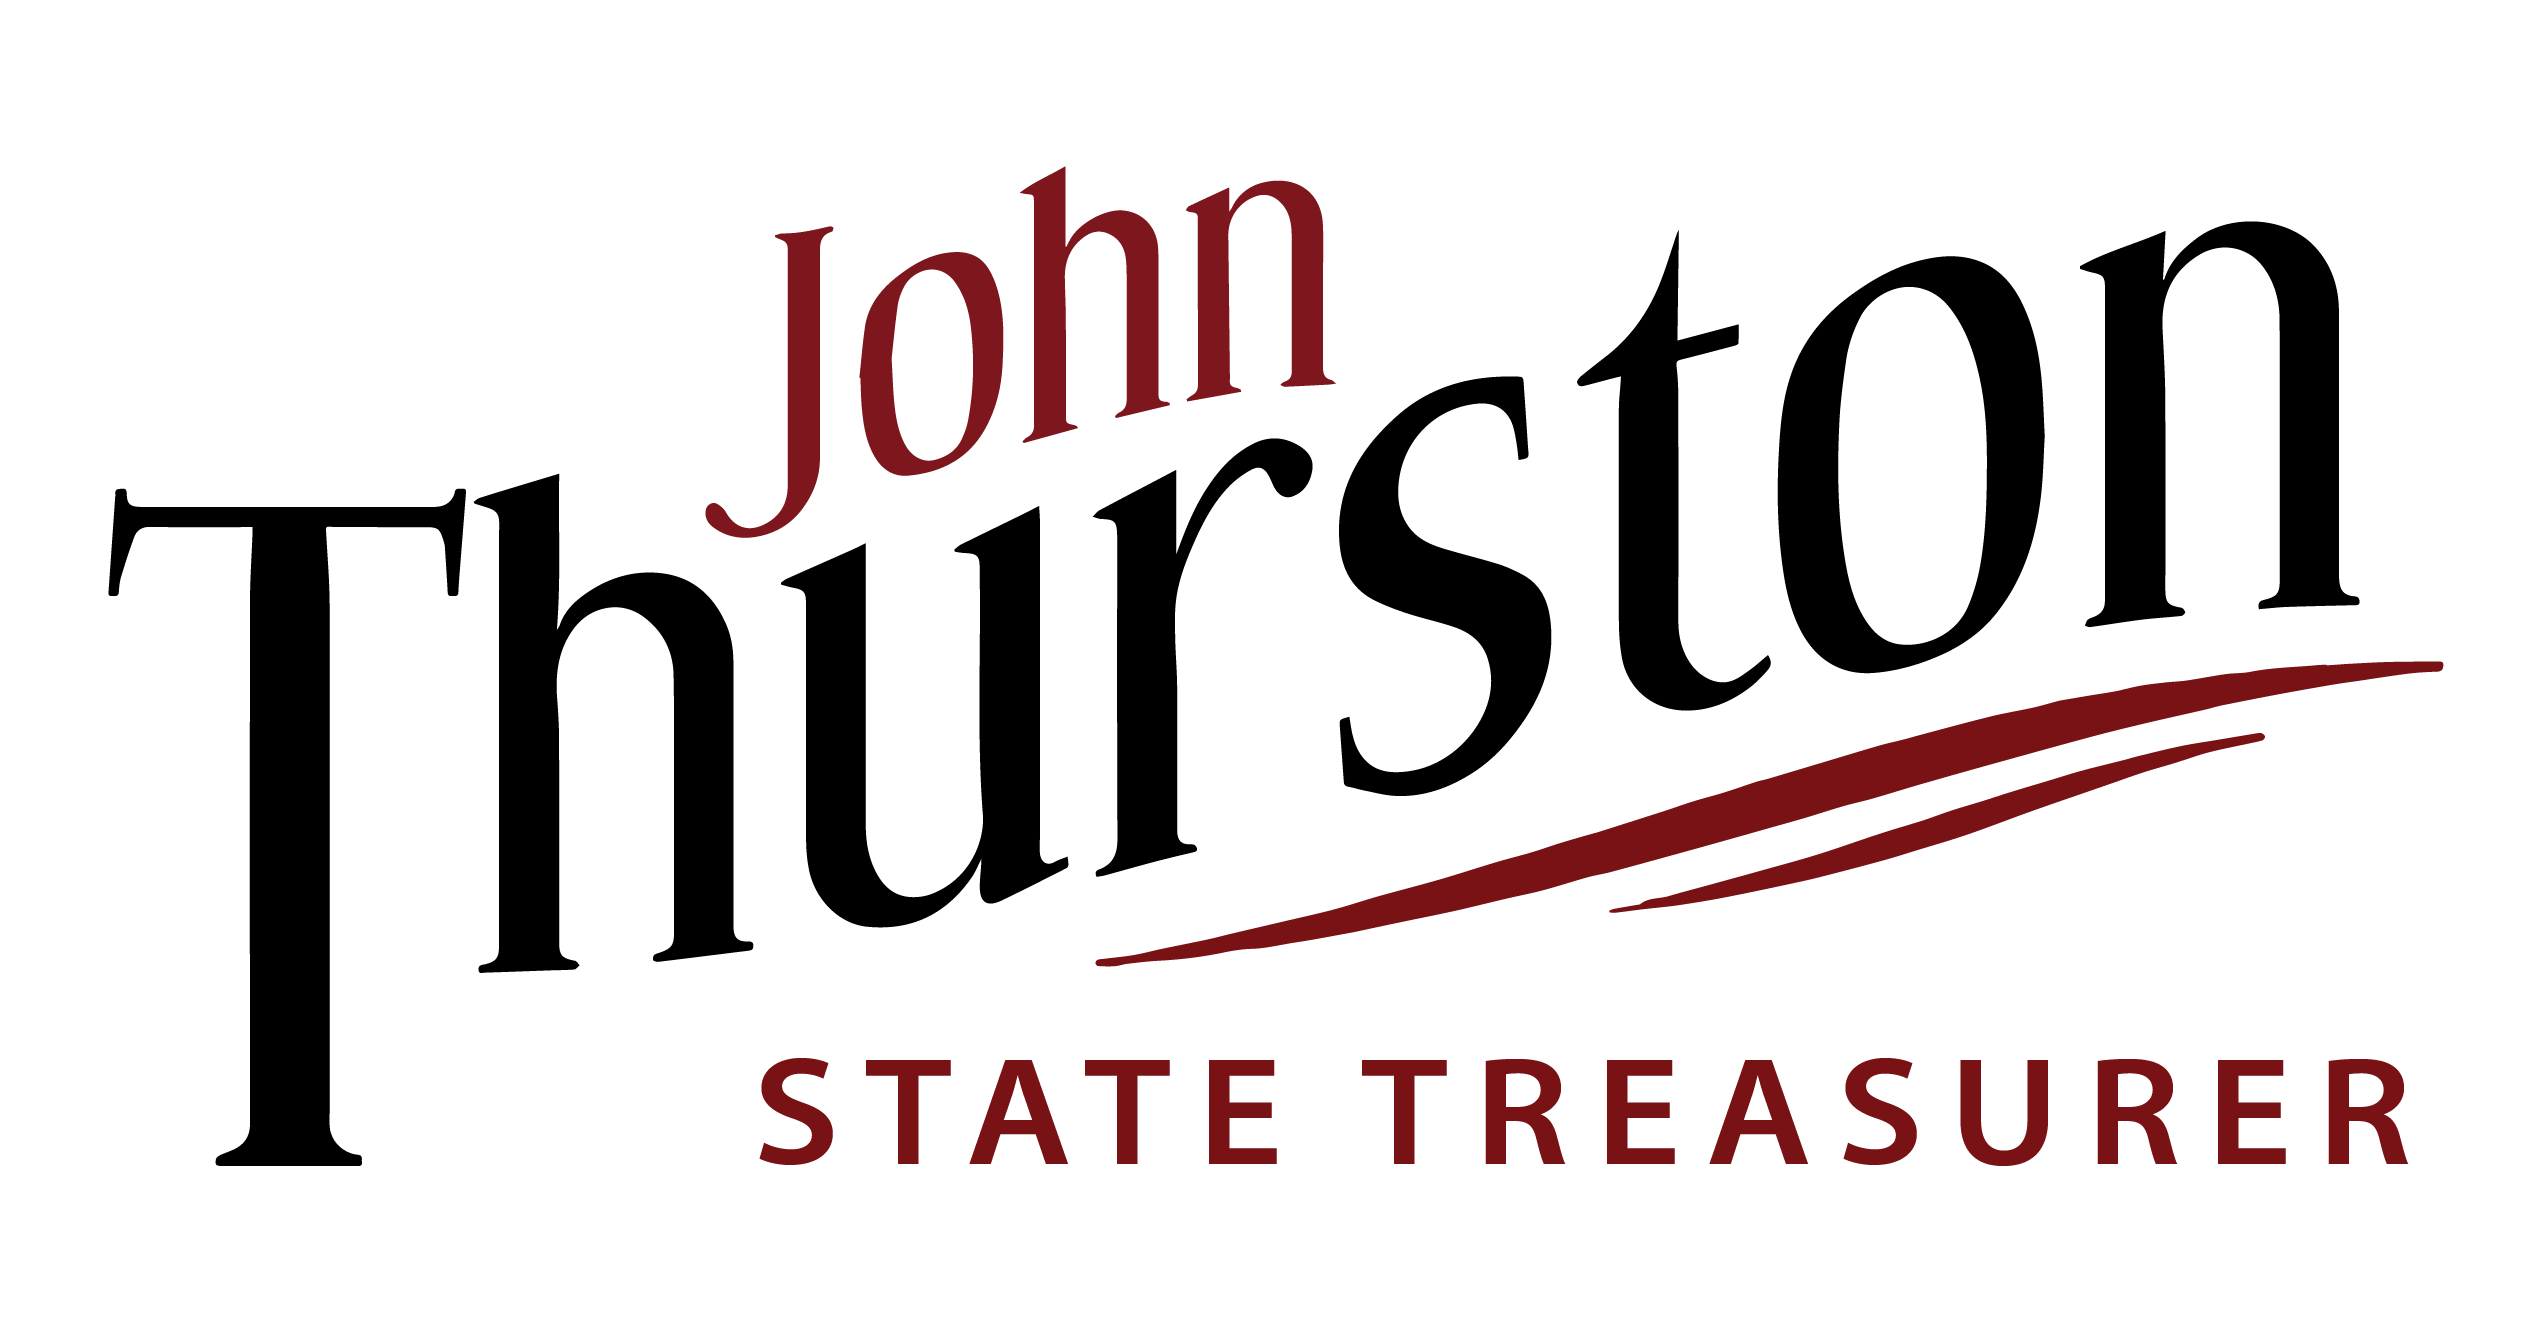 John Thurston for Treasurer